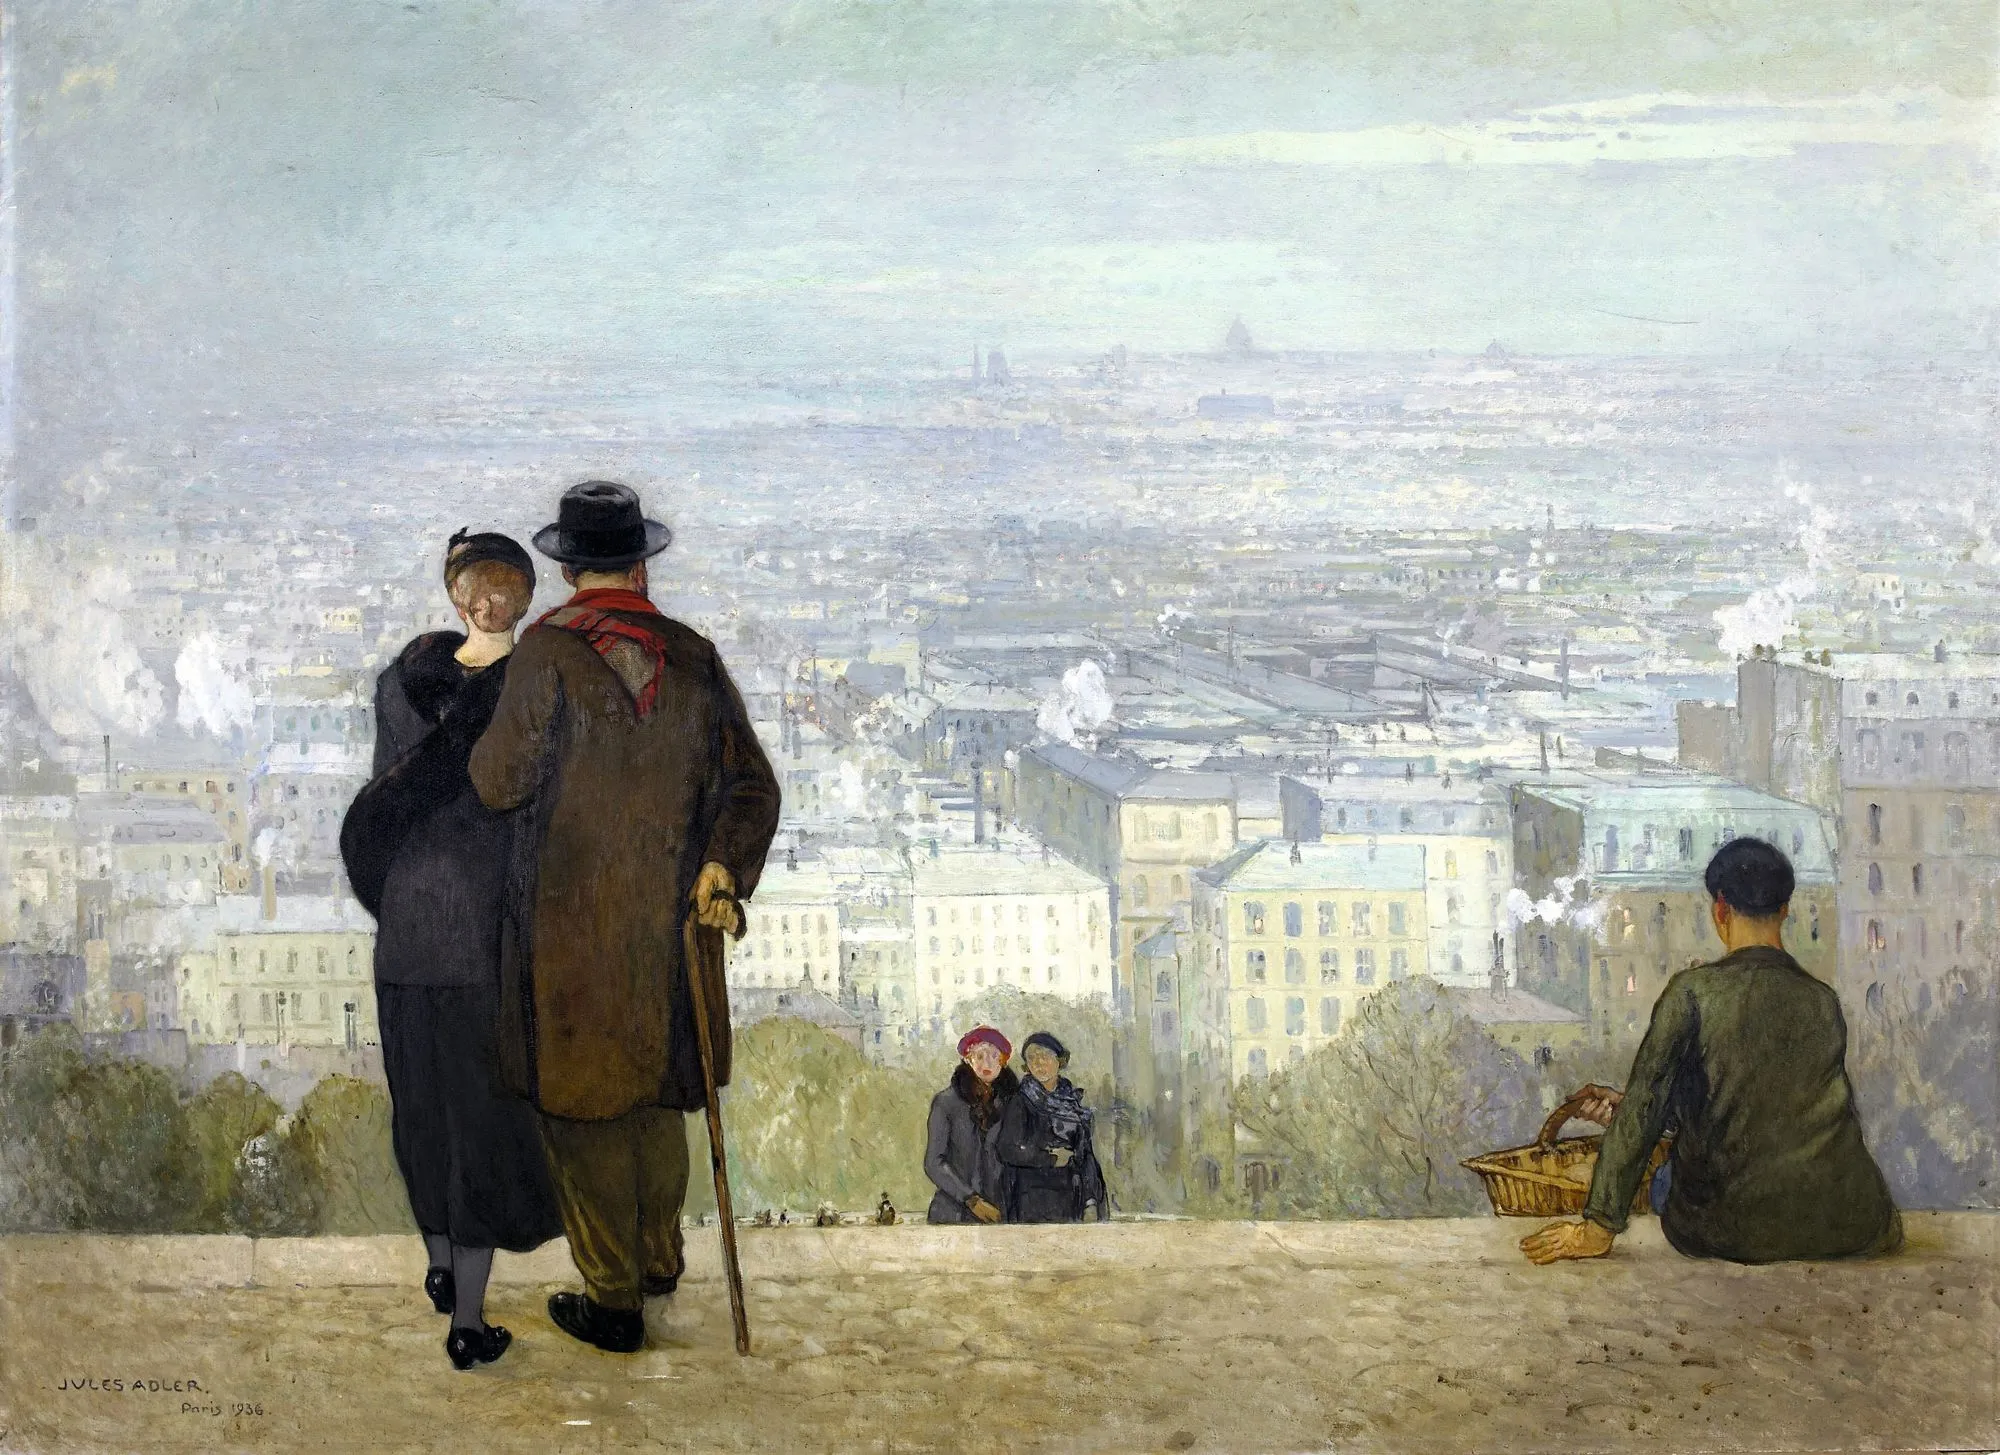 Jules Adler, Paris vu du Sacré-Cœur, huile sur toile, 1936, 200 × 275 cm, musée des Beaux-Arts de Dole.